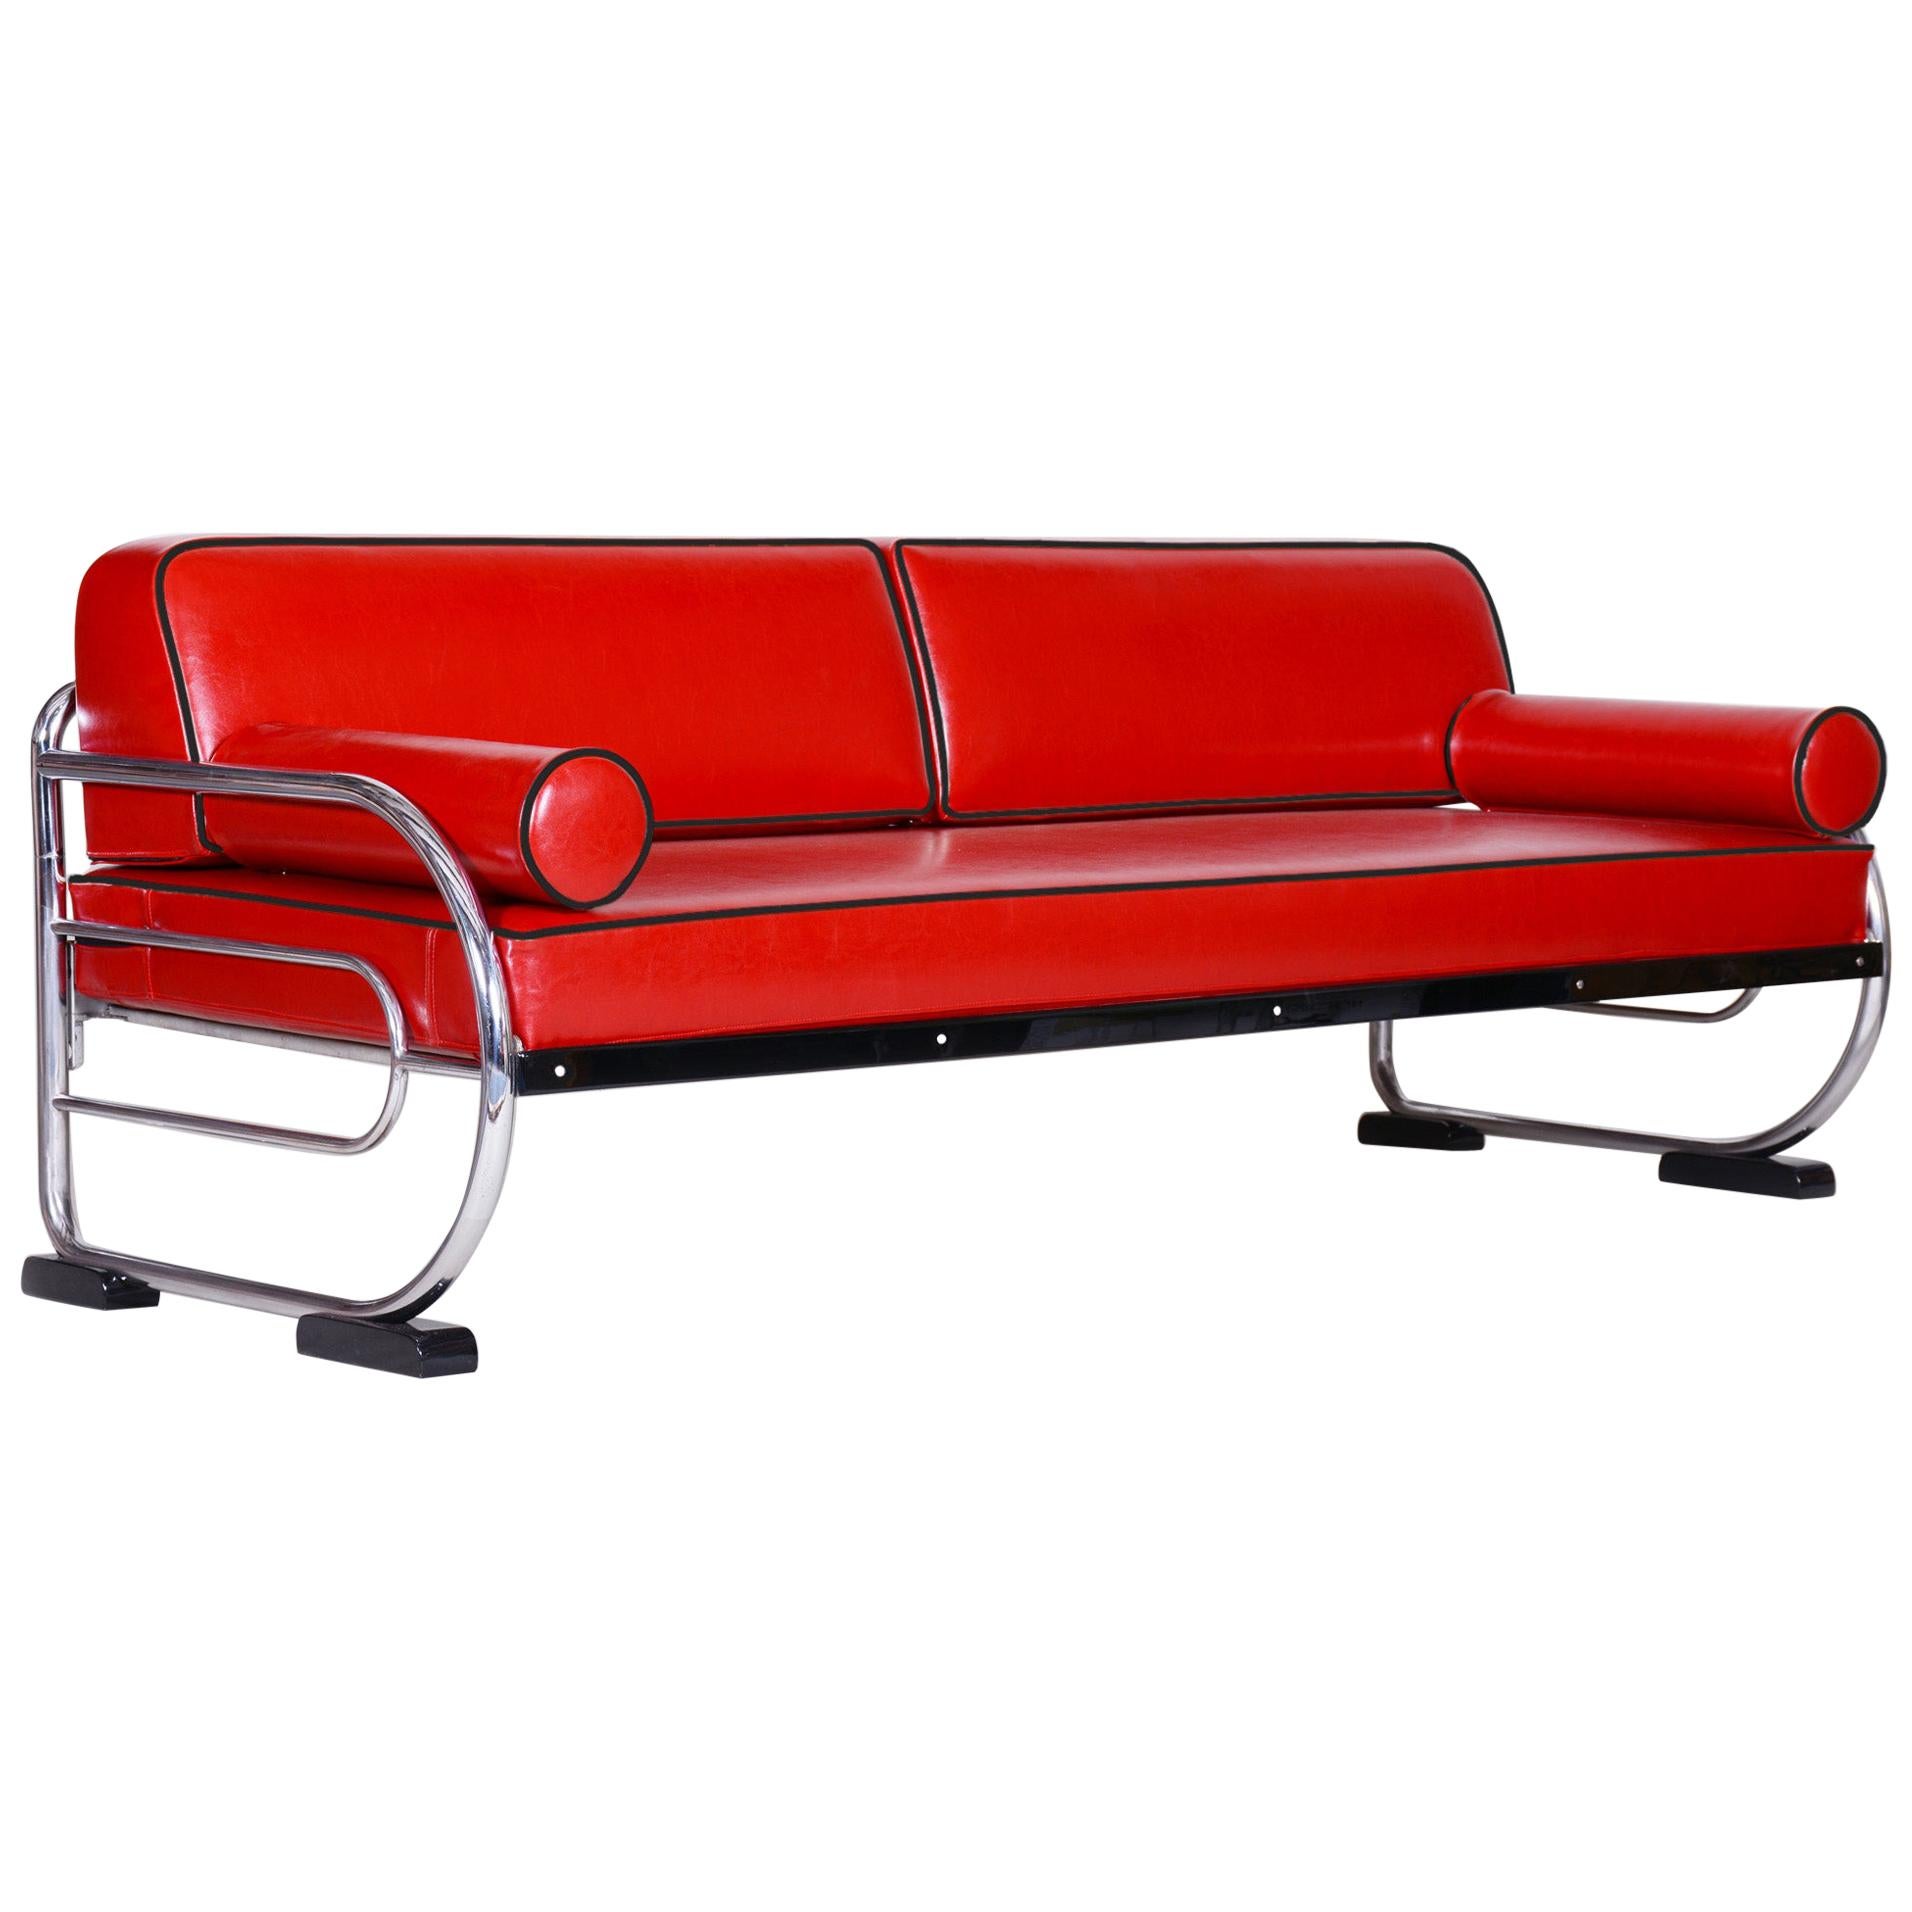 Bauhaus Red Tubular Chromed Steel Sofa by Robert Slezák, Design by Thonet, 1930s